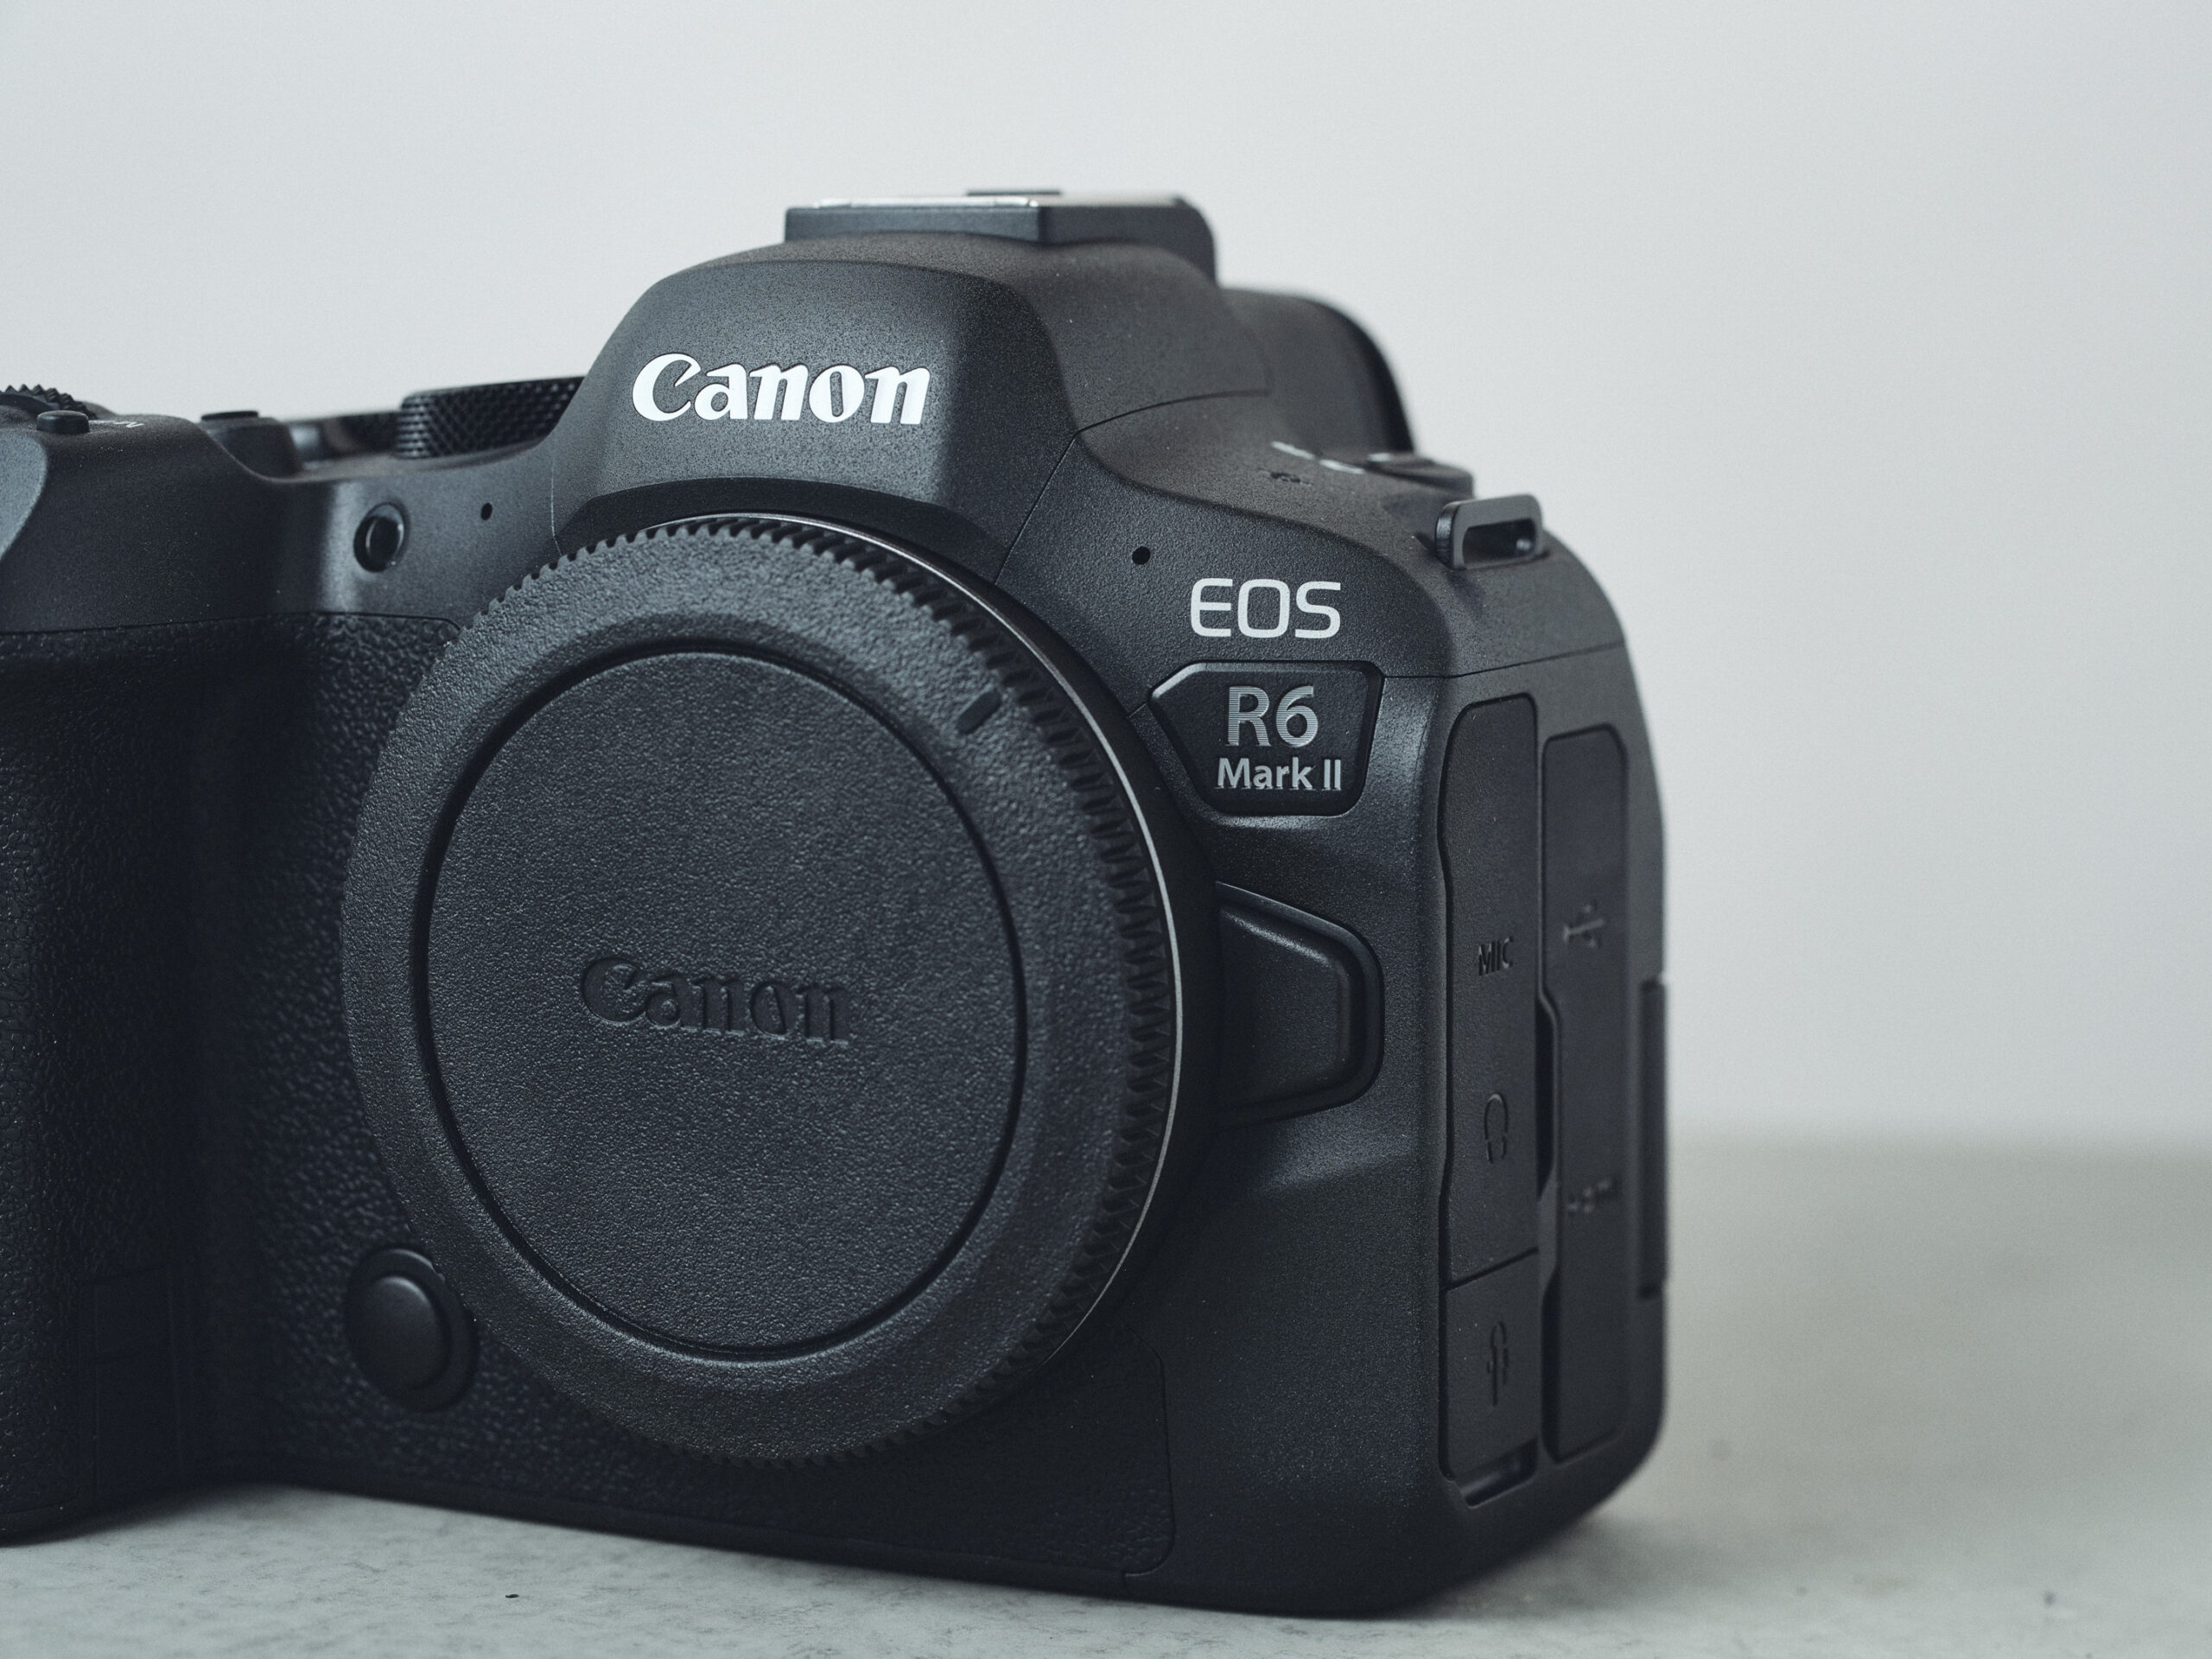 価格がネックだが着実な進化とバランスの取れたフルサイズミラーレスカメラ：Canon EOS R6 Mark II レビュー